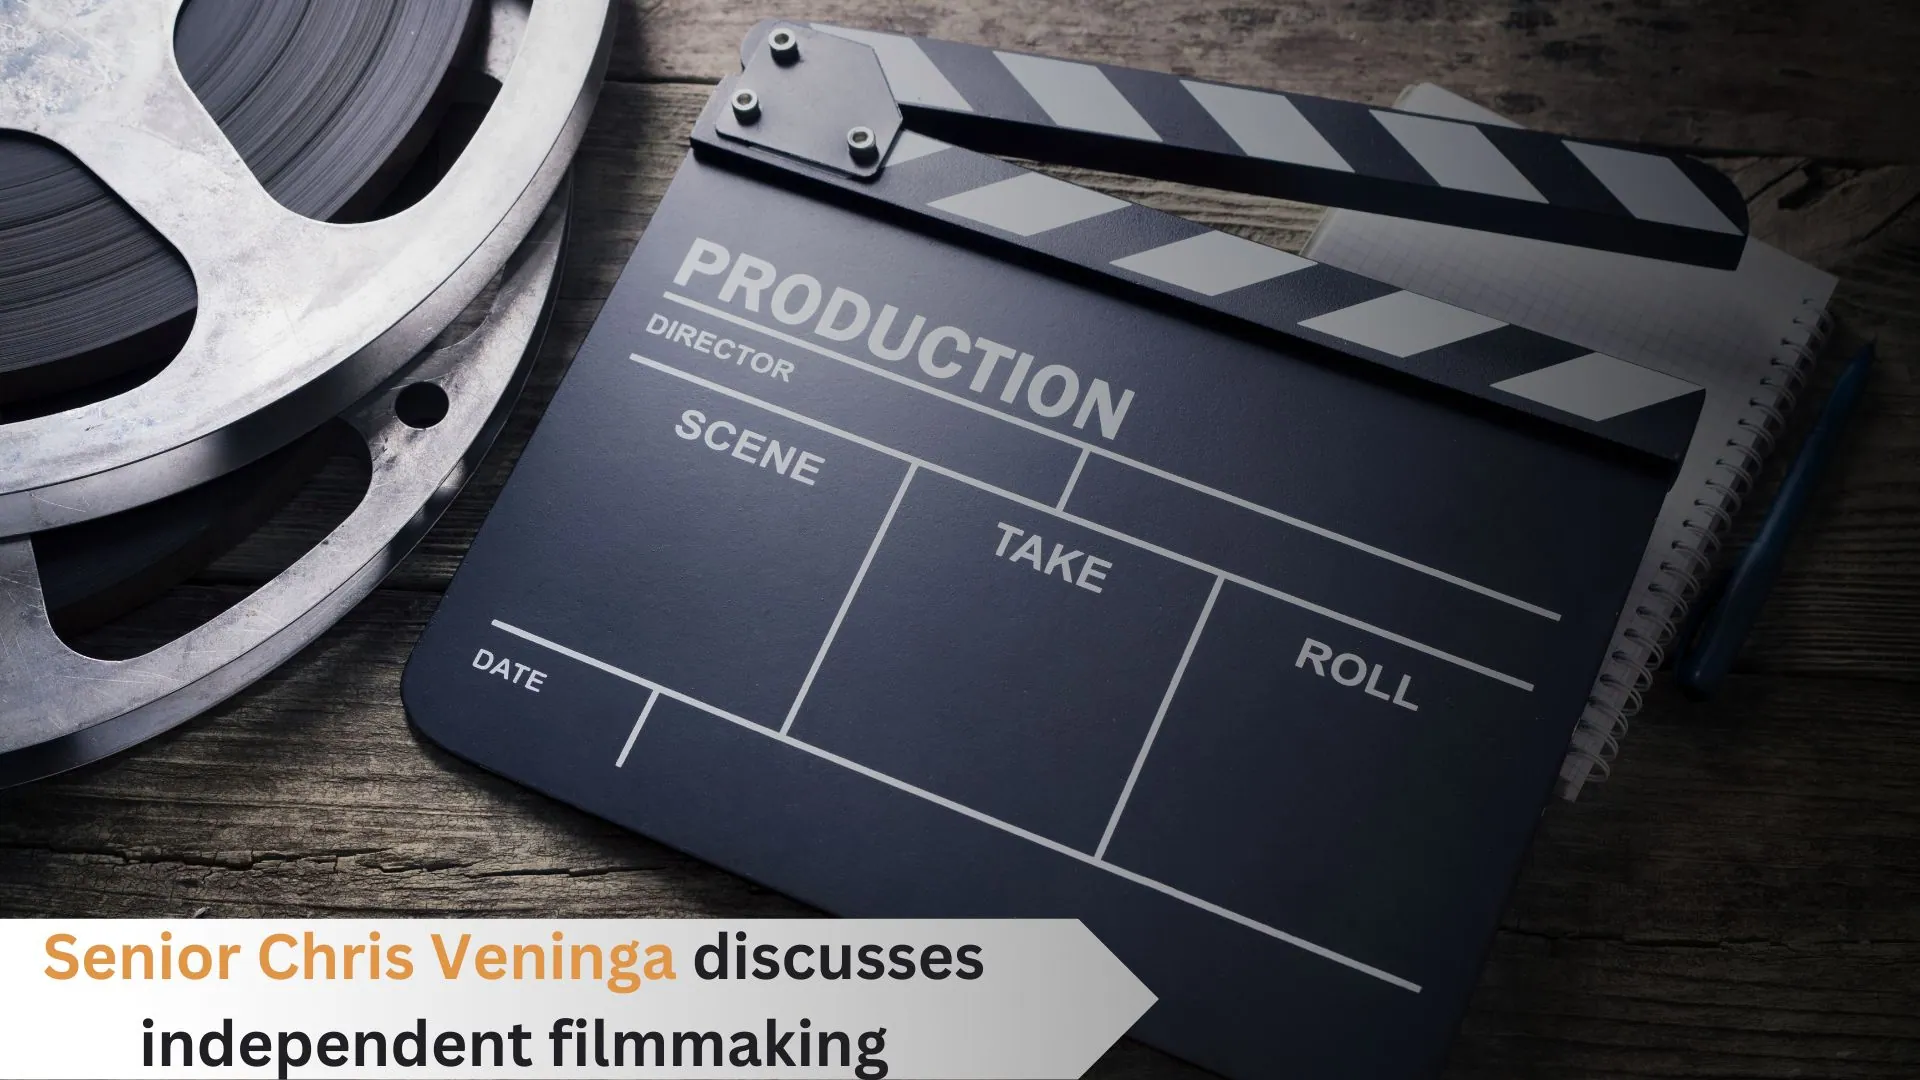 Senior Chris Veninga discusses filming sequels and independent filmmaking